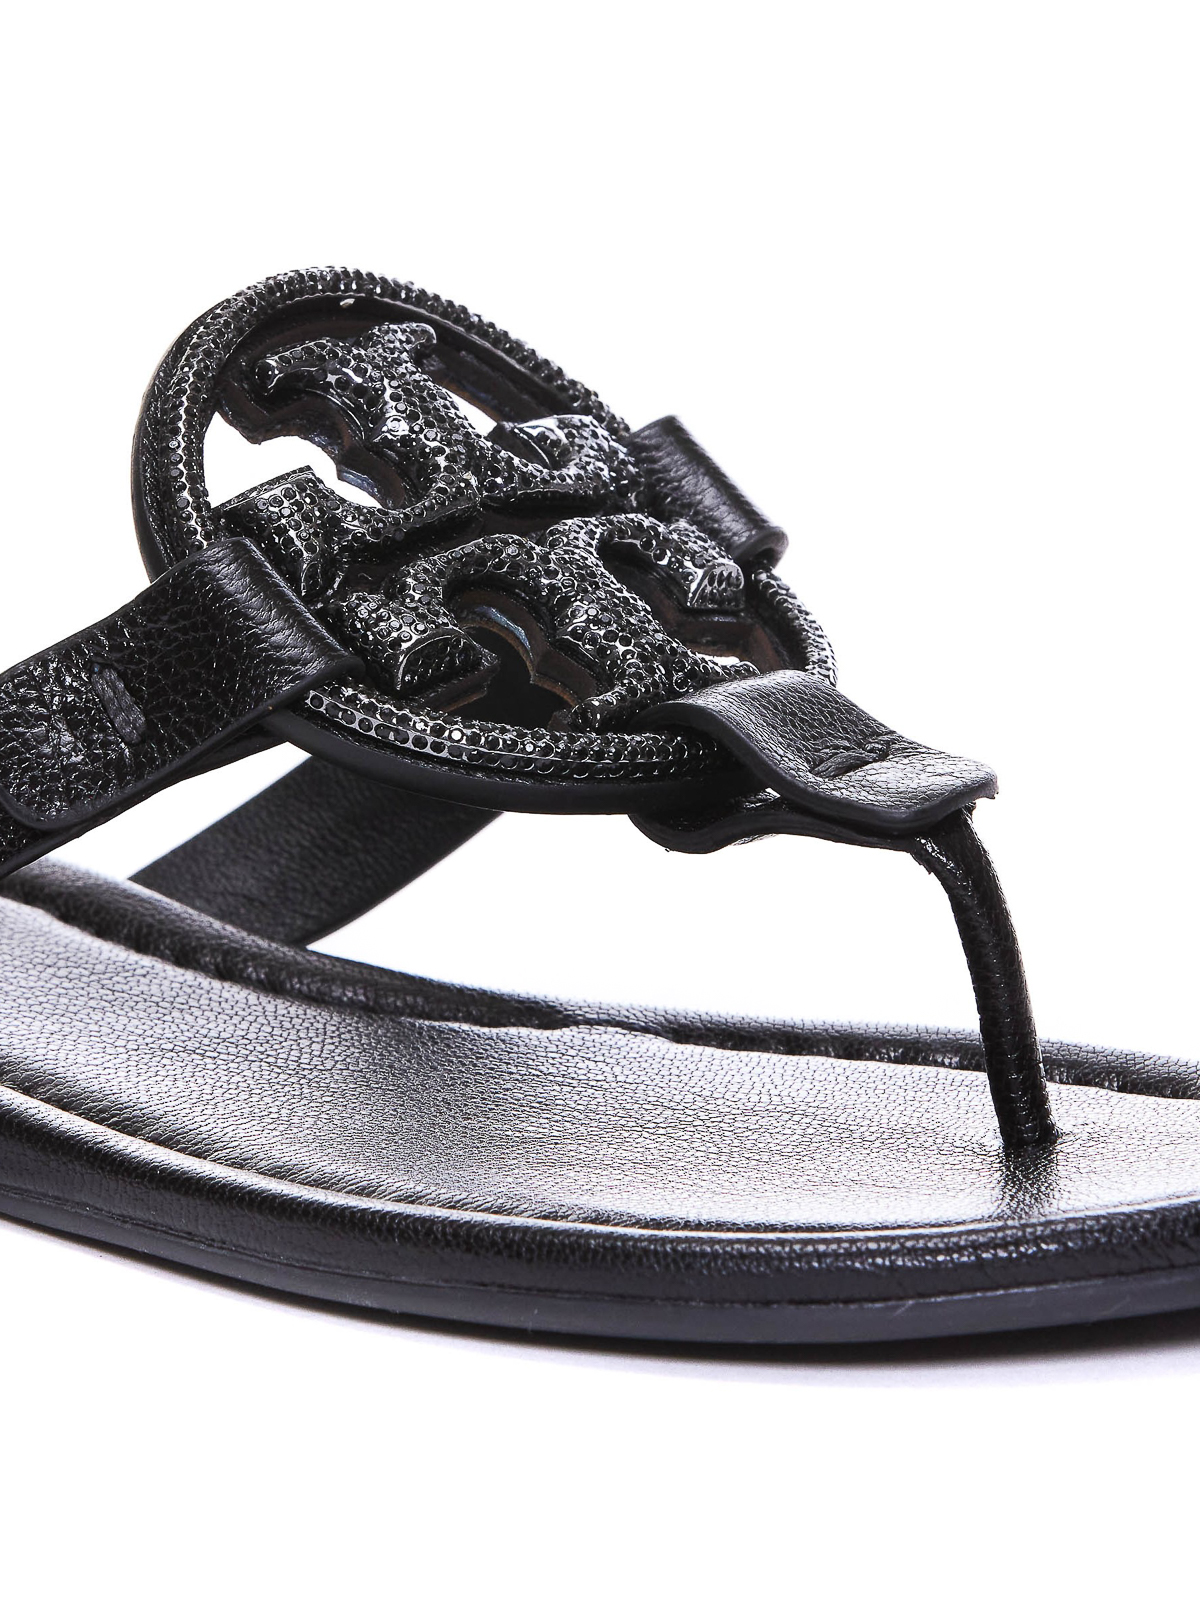 Tory Burch Miller Sandals | Shopbop-sgquangbinhtourist.com.vn